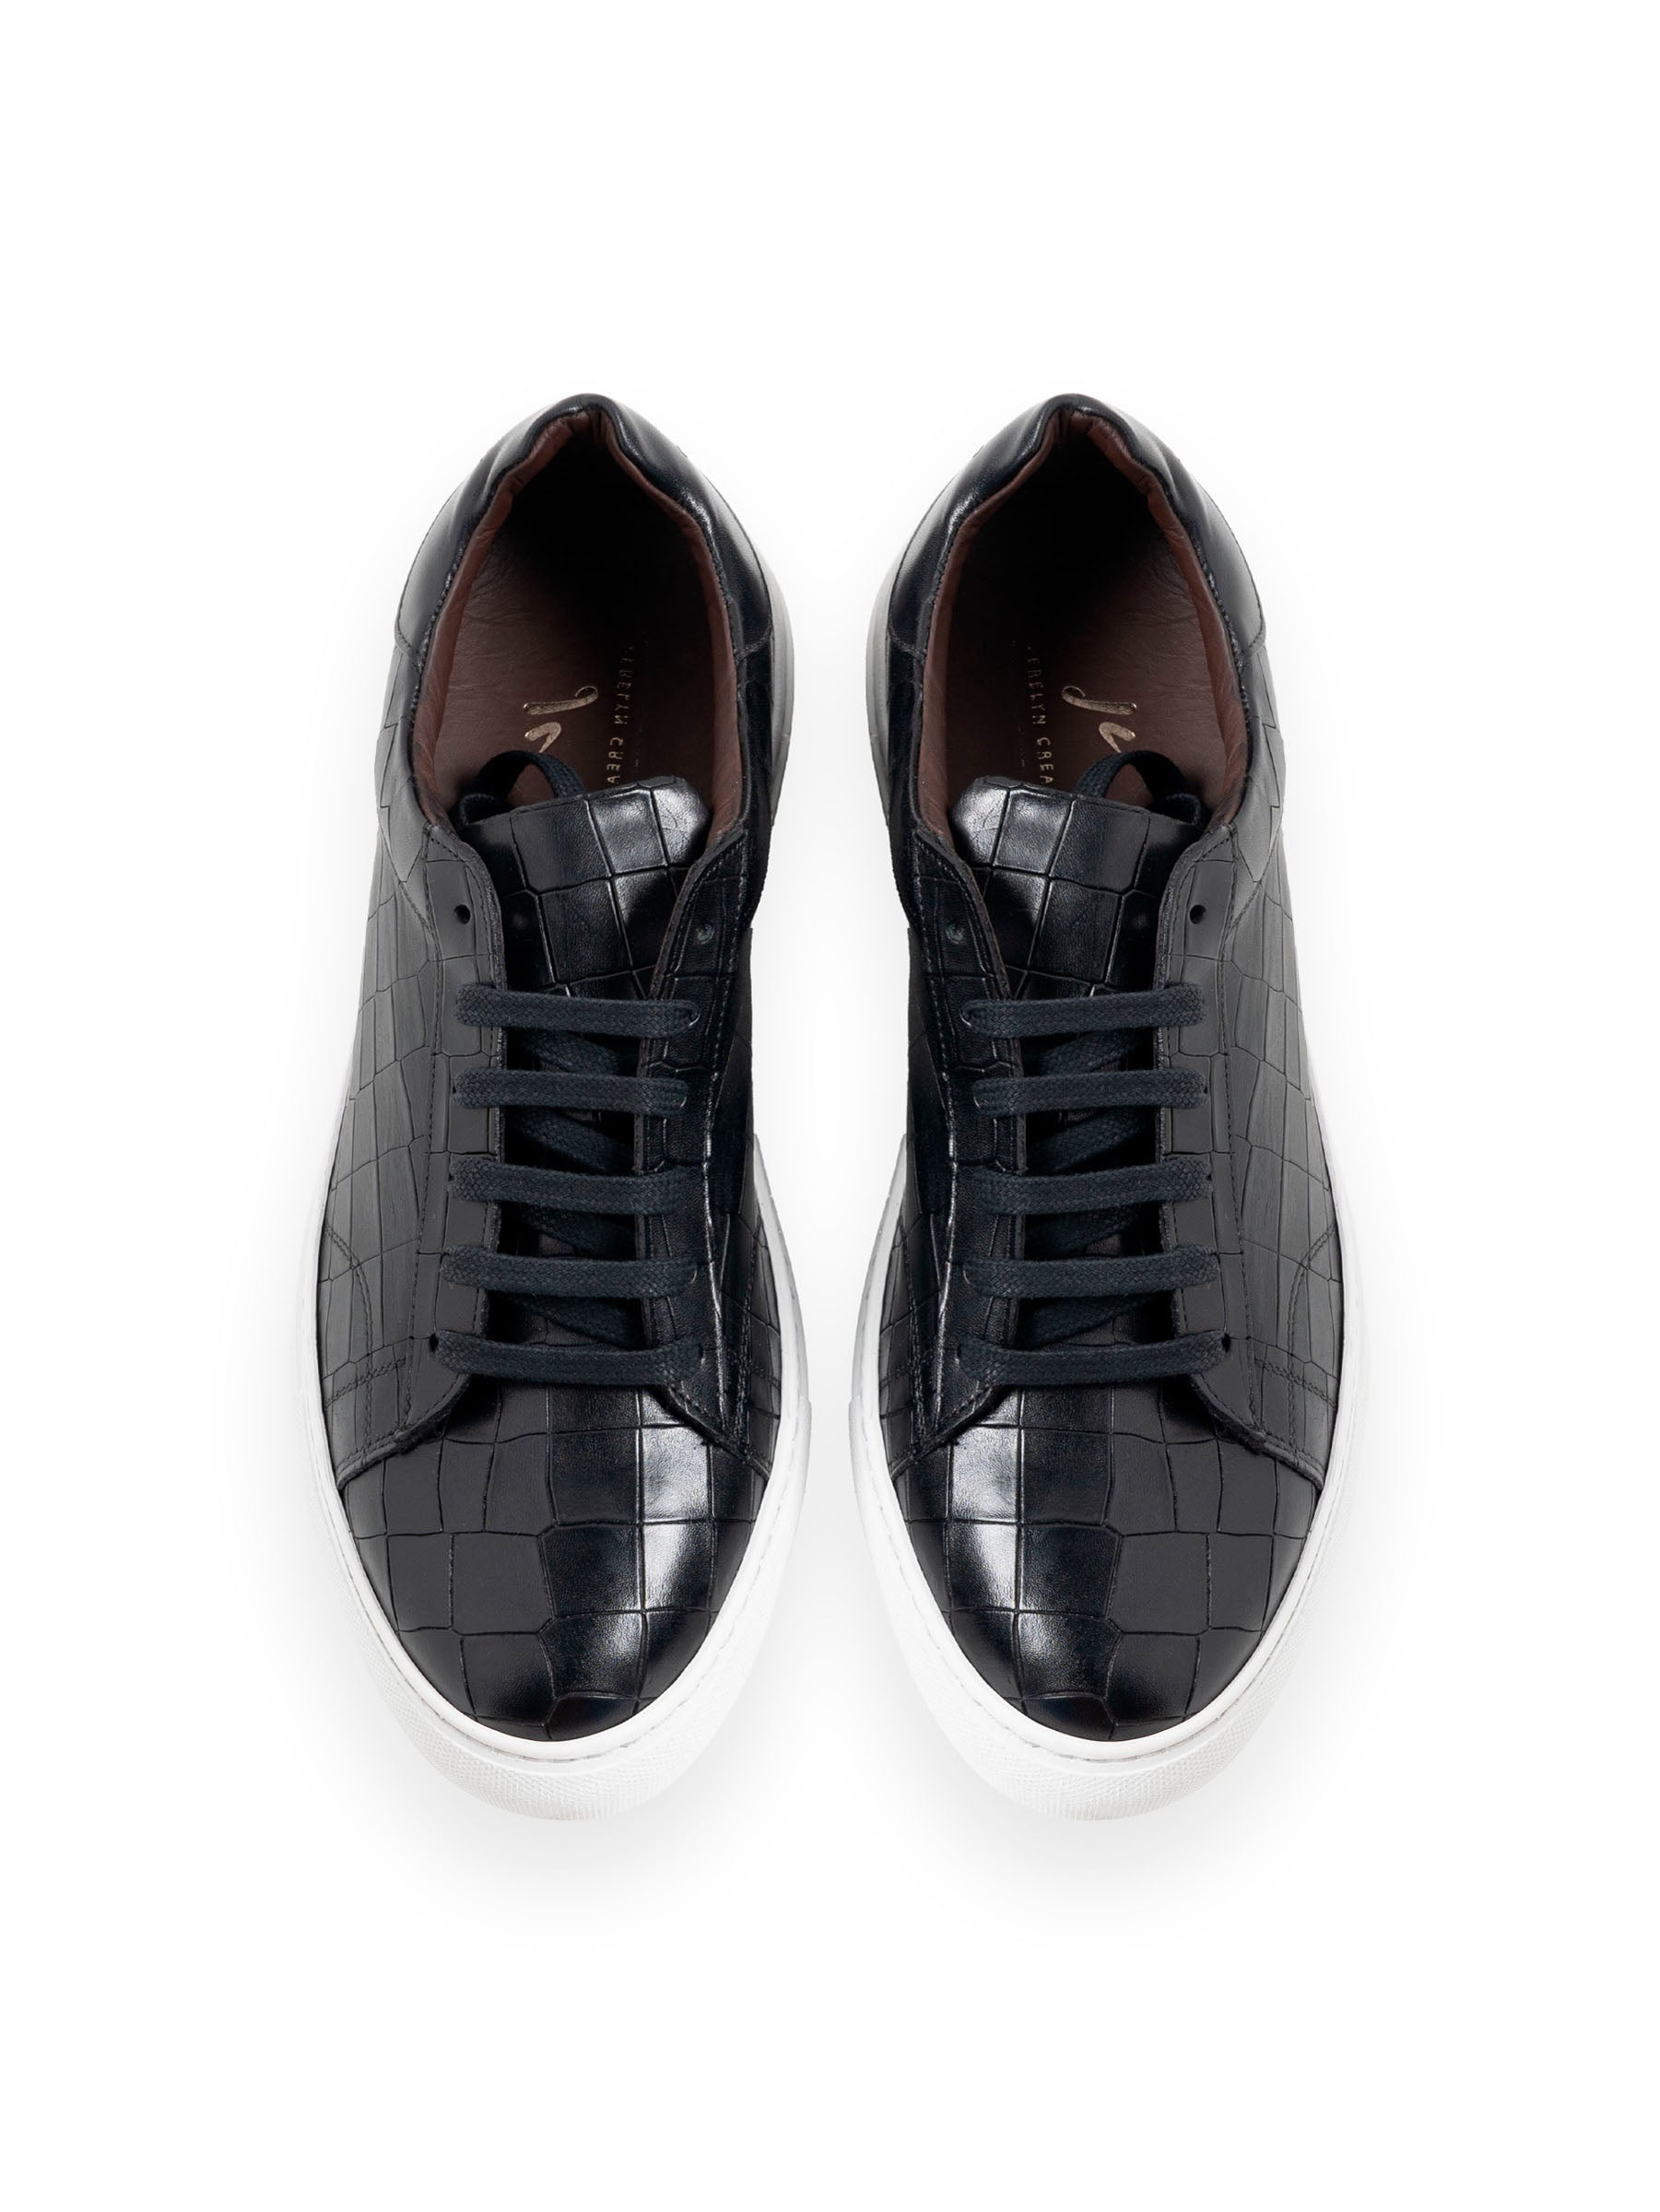 LENDL Black Elegance Italian Leather Sneakers by Jerelyn Creado